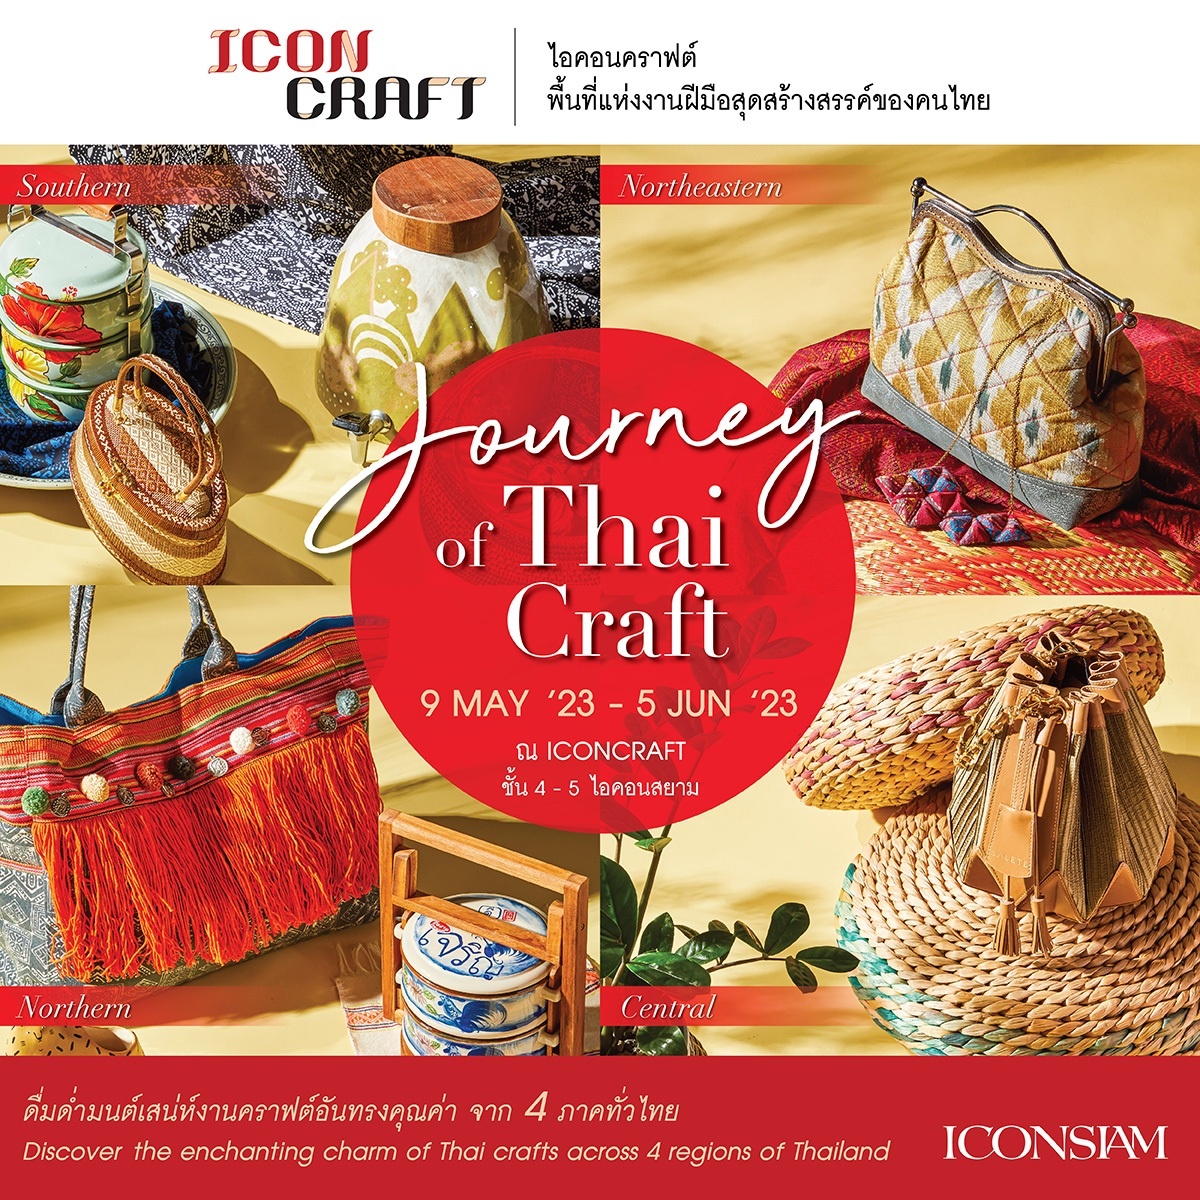 ไอคอนคราฟต์ ชวนมาดื่มด่ำมนต์เสน่ห์งานคราฟต์อันทรงคุณค่า 4 ภาคทั่วไทย The Journey of Thai Craft ตั้งแต่วันนี้ - 5 มิถุนายน